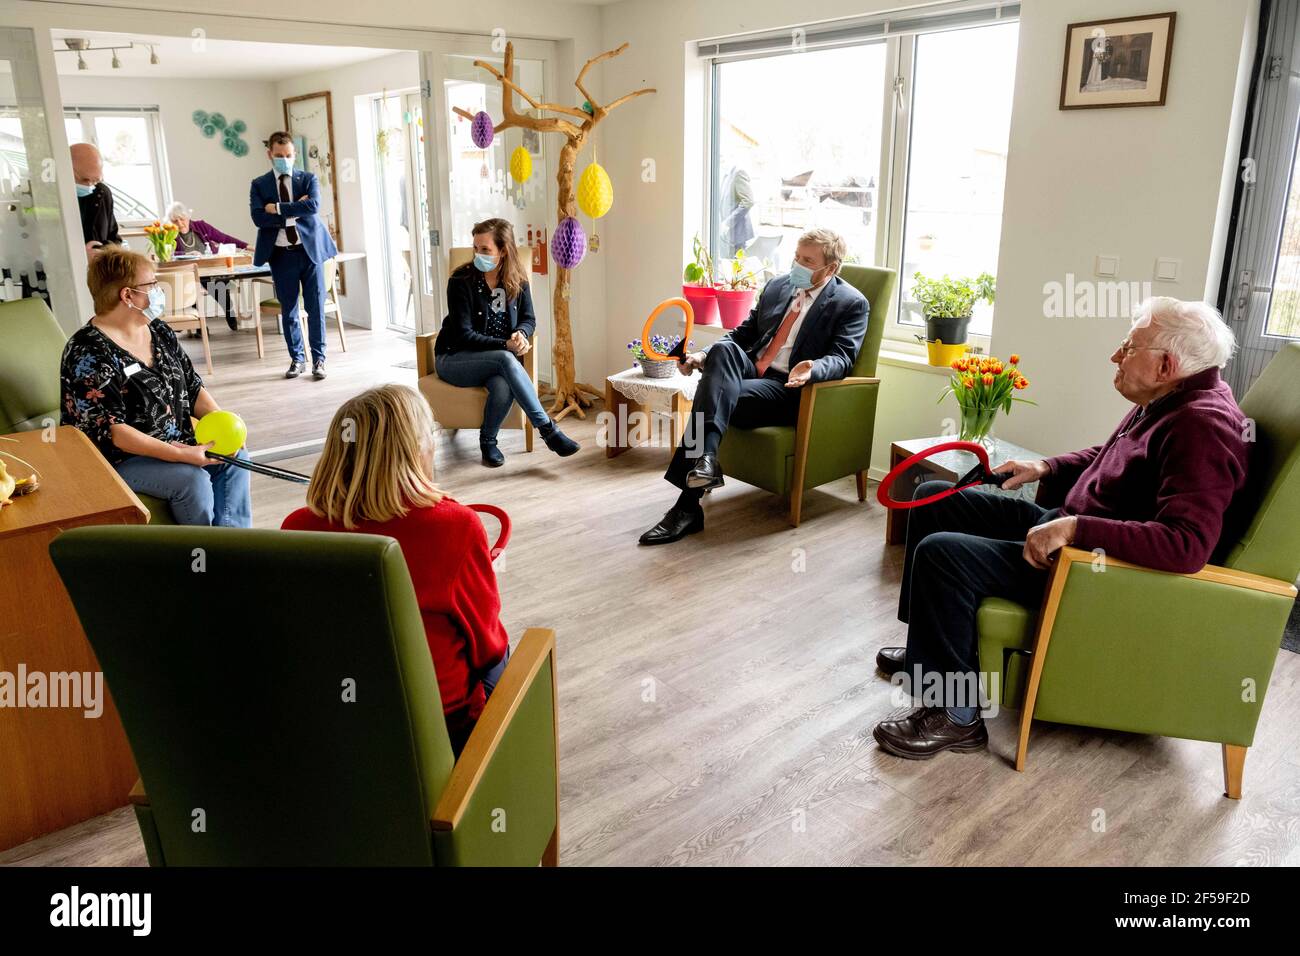 King Willem Alexander lors d'une visite de travail à Flevoland de soins résidentiels, les lieux de soins infirmiers Hanzeborg et Daycare Het Groene huis à Lelystad. (Photo par DPPA/Sipa USA) Banque D'Images